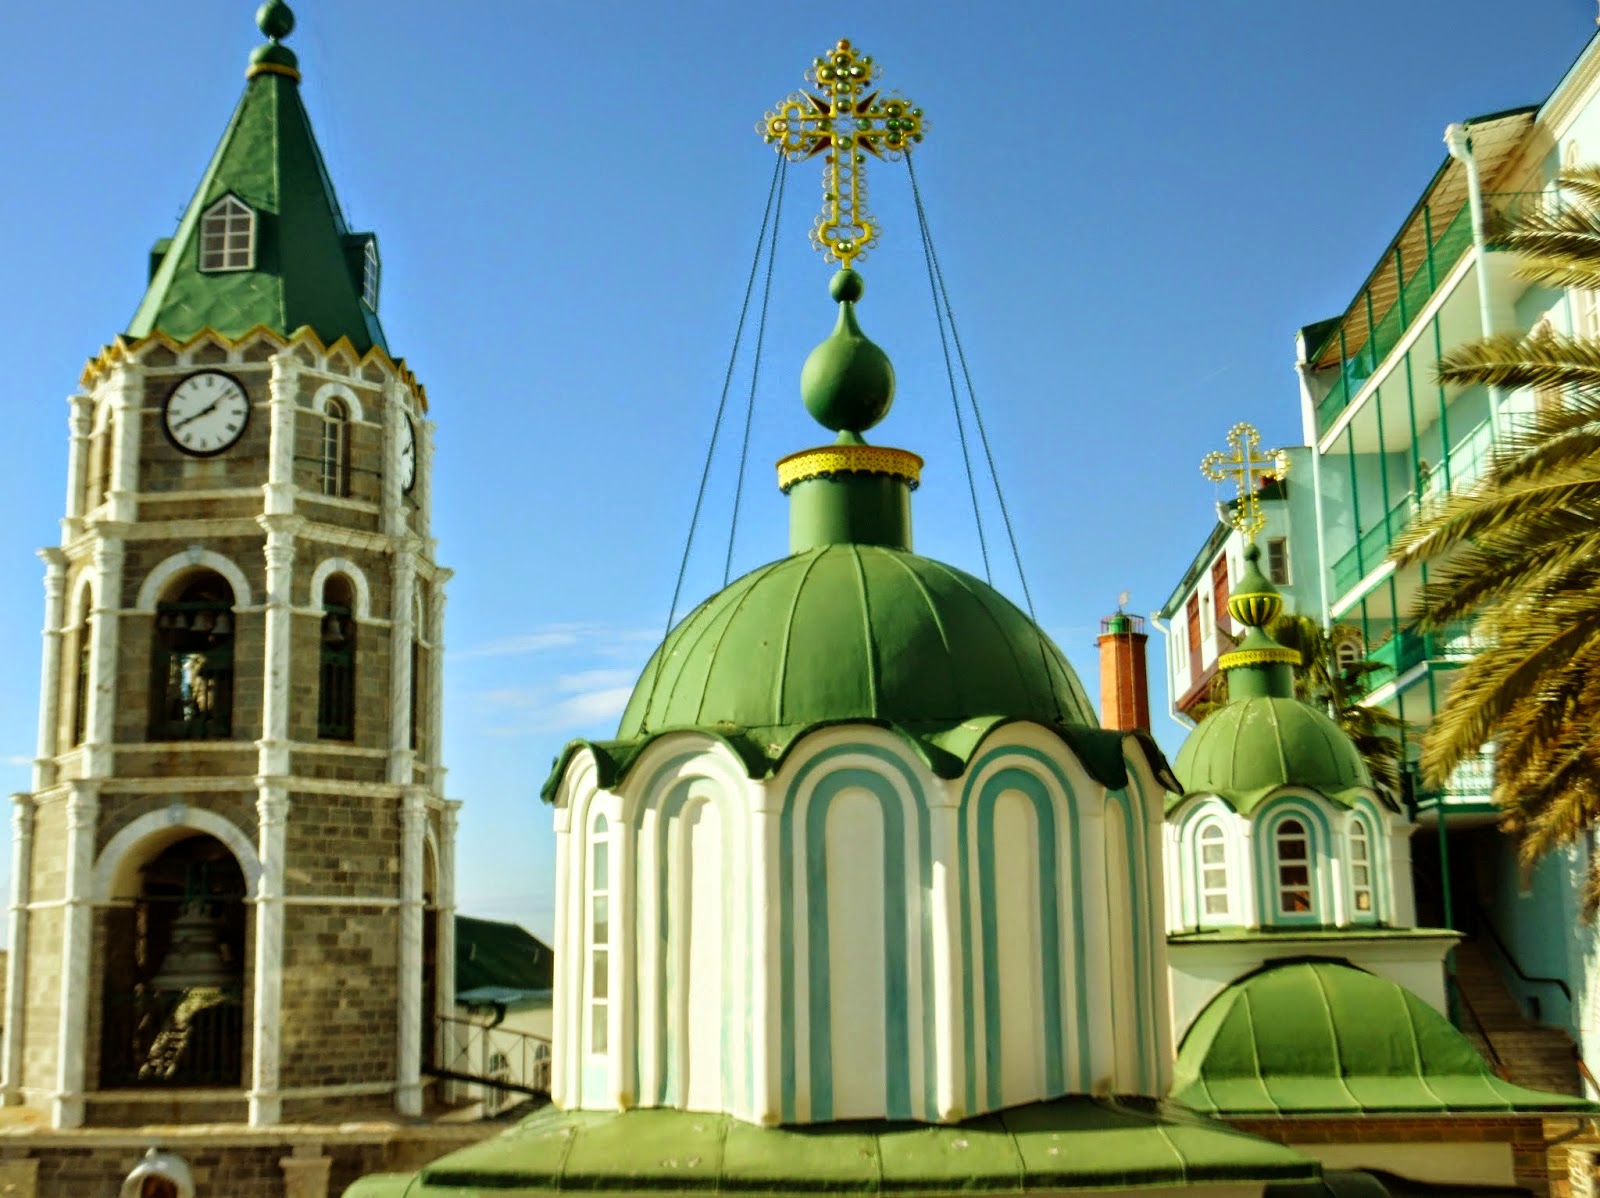 5844 - Φωτογραφίες του κωδωνοστασίου της Ρωσικής Μονής του Αγίου Παντελεήμονος στο Άγιο Όρος - Φωτογραφία 4